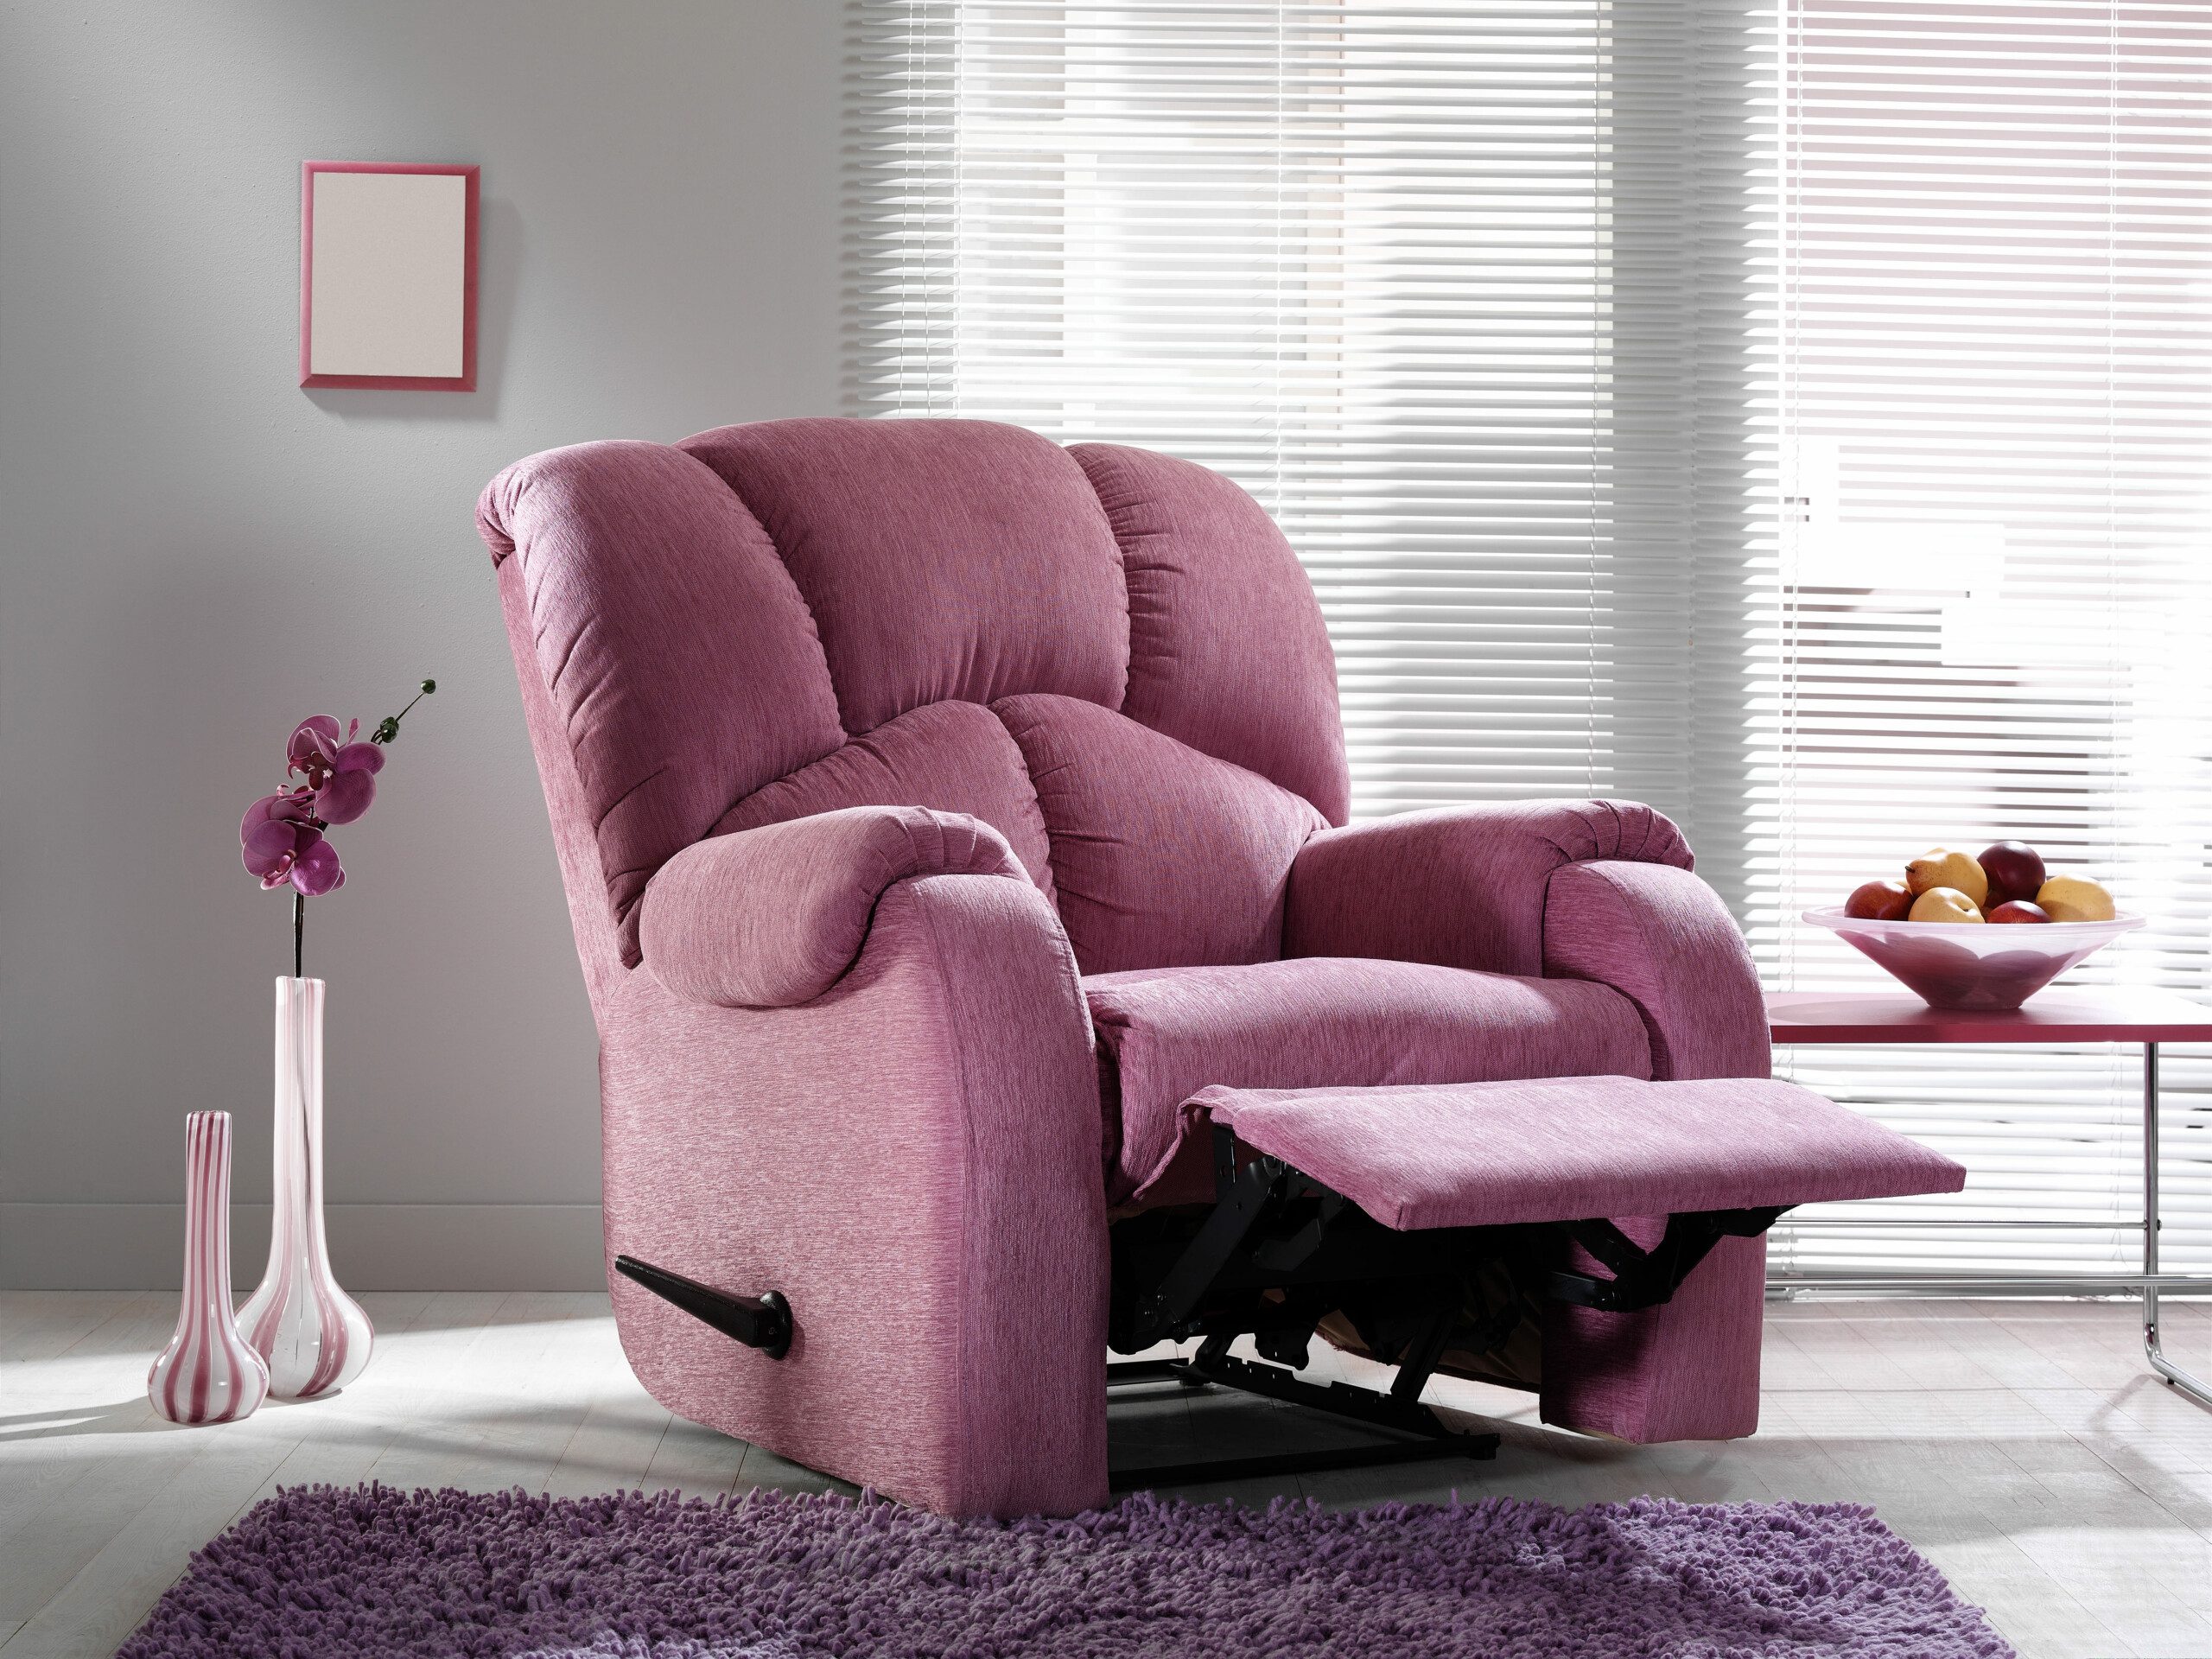 Imagem de uma poltrona modelo reclinável na cor rosa em uma sala de estar. 